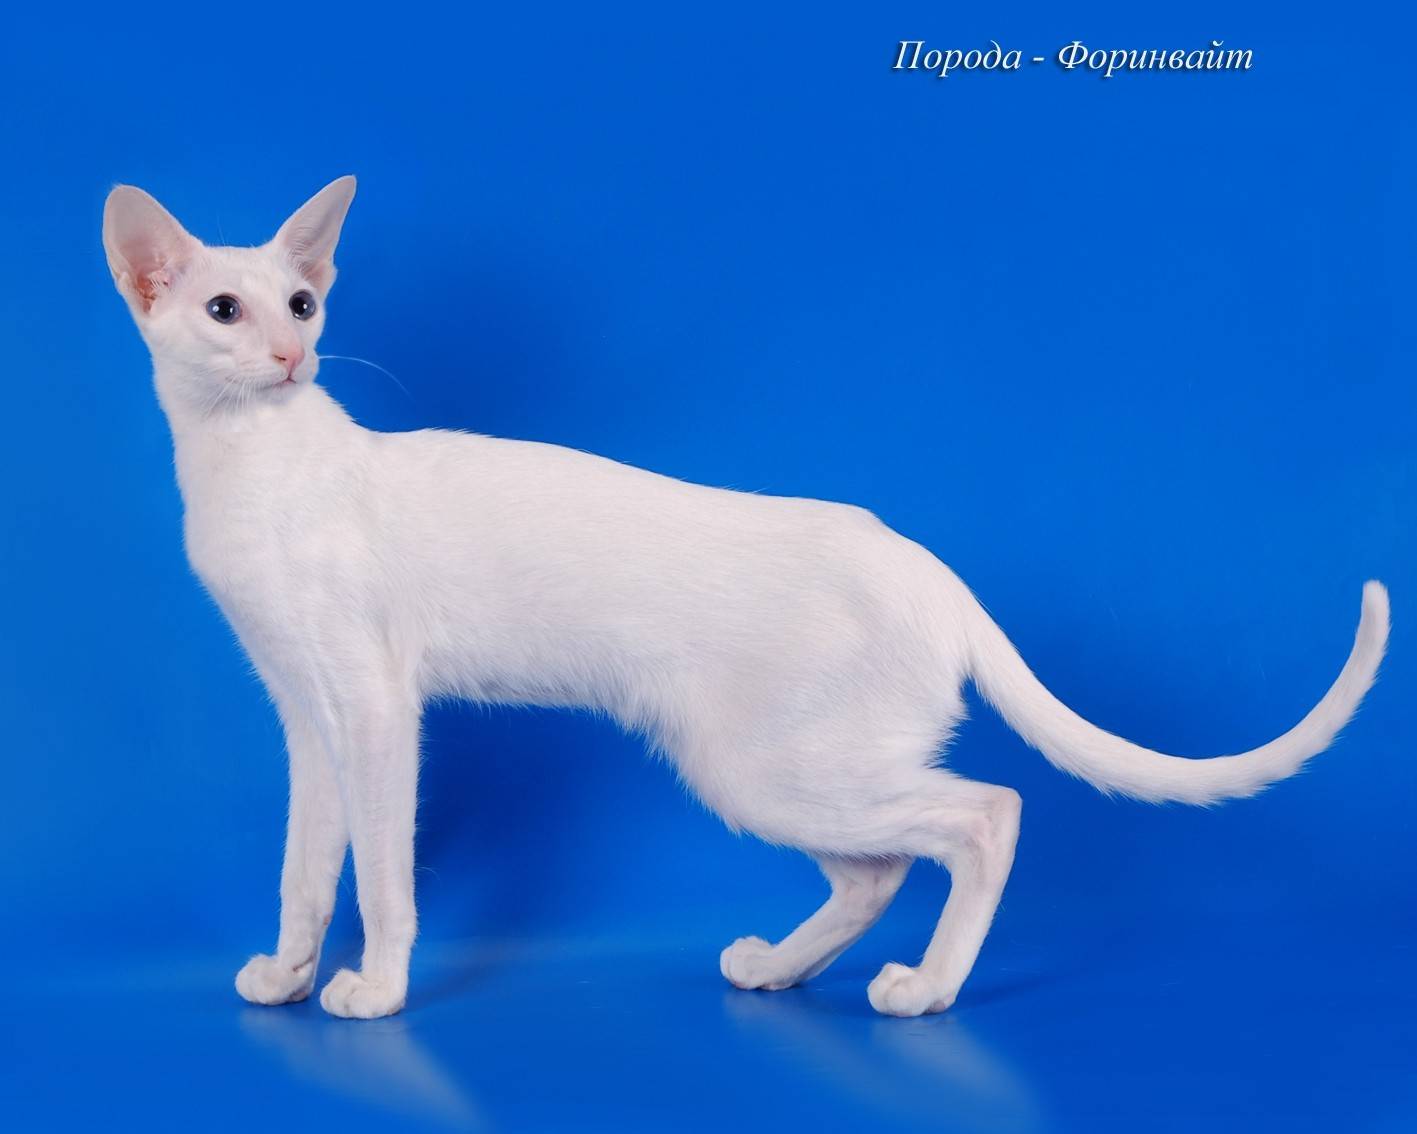 Форин вайт — описание породы и характер кошки